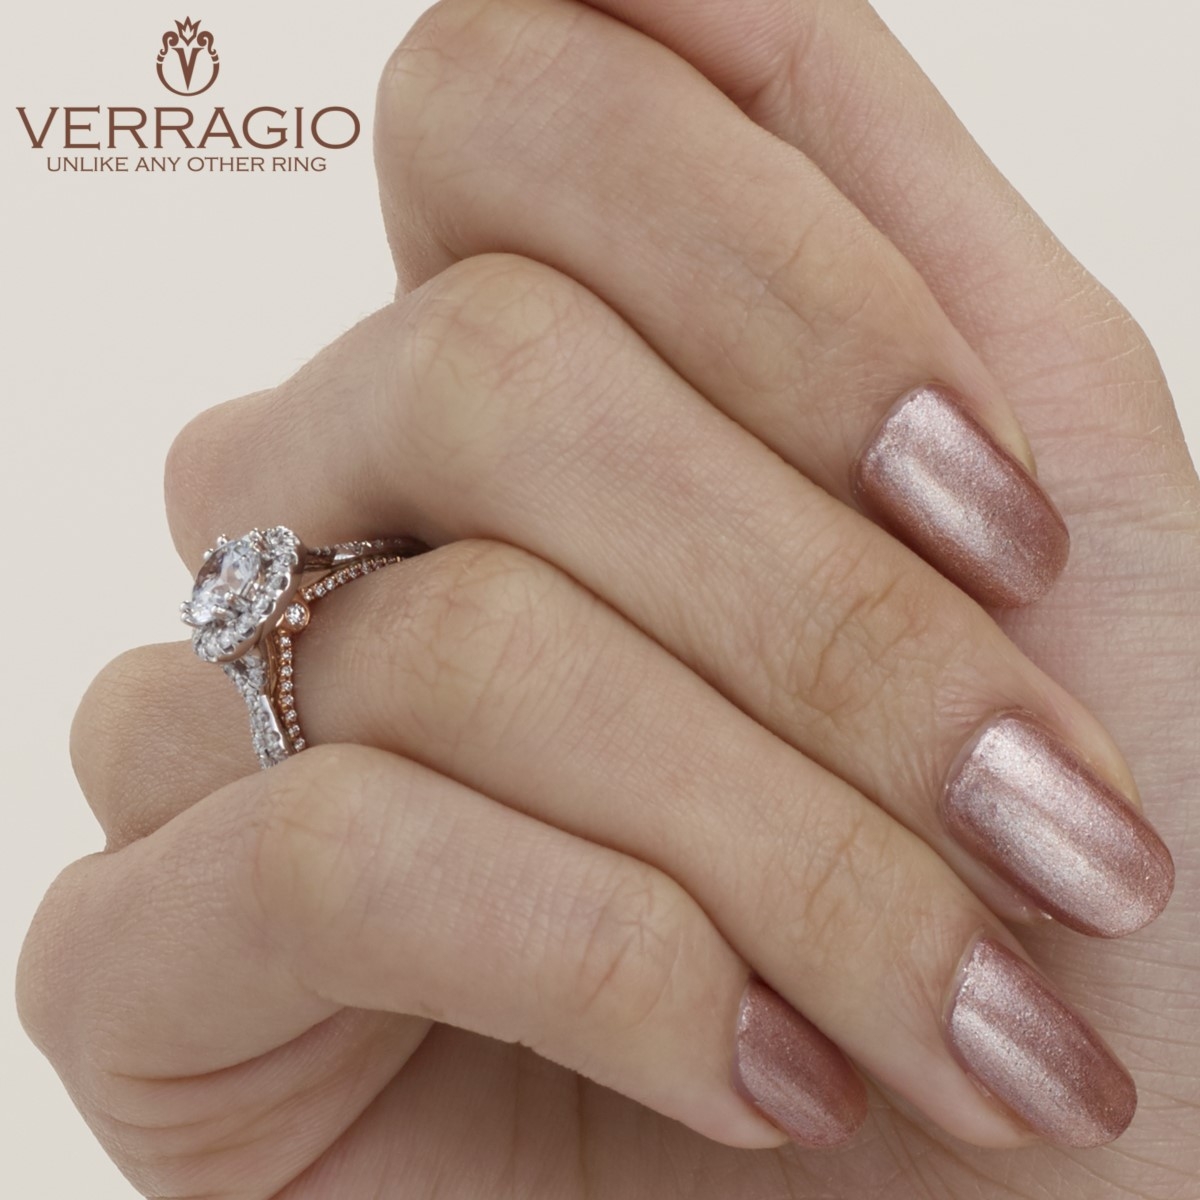 Verragio Couture-0472R-2WR 14 Karat Engagement Ring